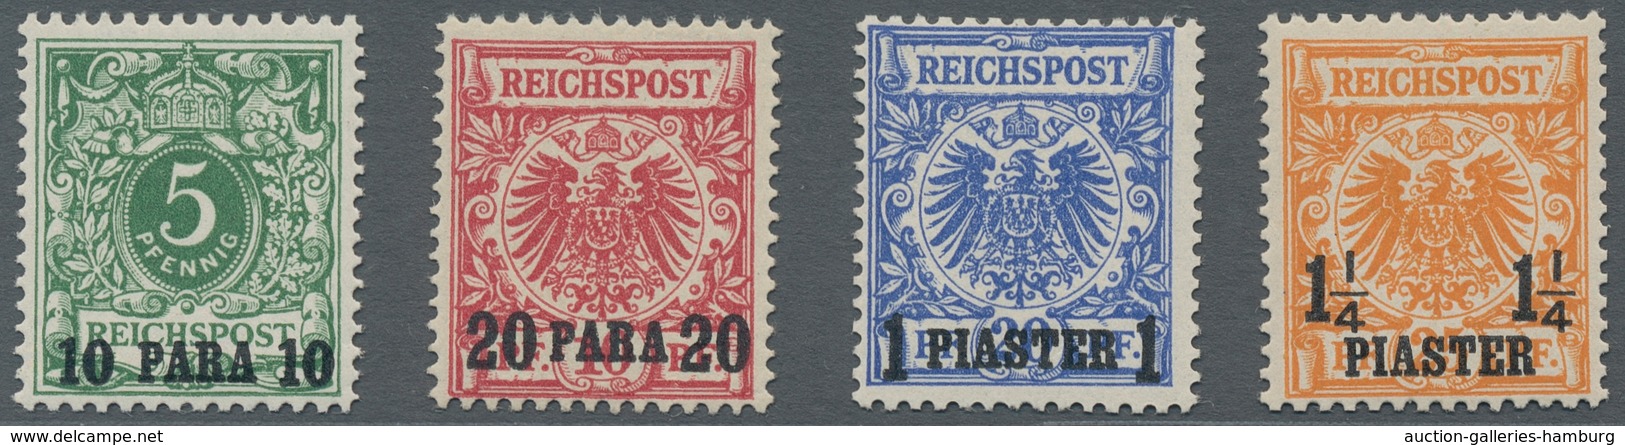 Deutsche Post In Der Türkei: 1889, 10 PA Bis 2 1/2 PIA, A. Krone Adler, Aufdrucksatz Postfrisch, Ein - Turquia (oficinas)